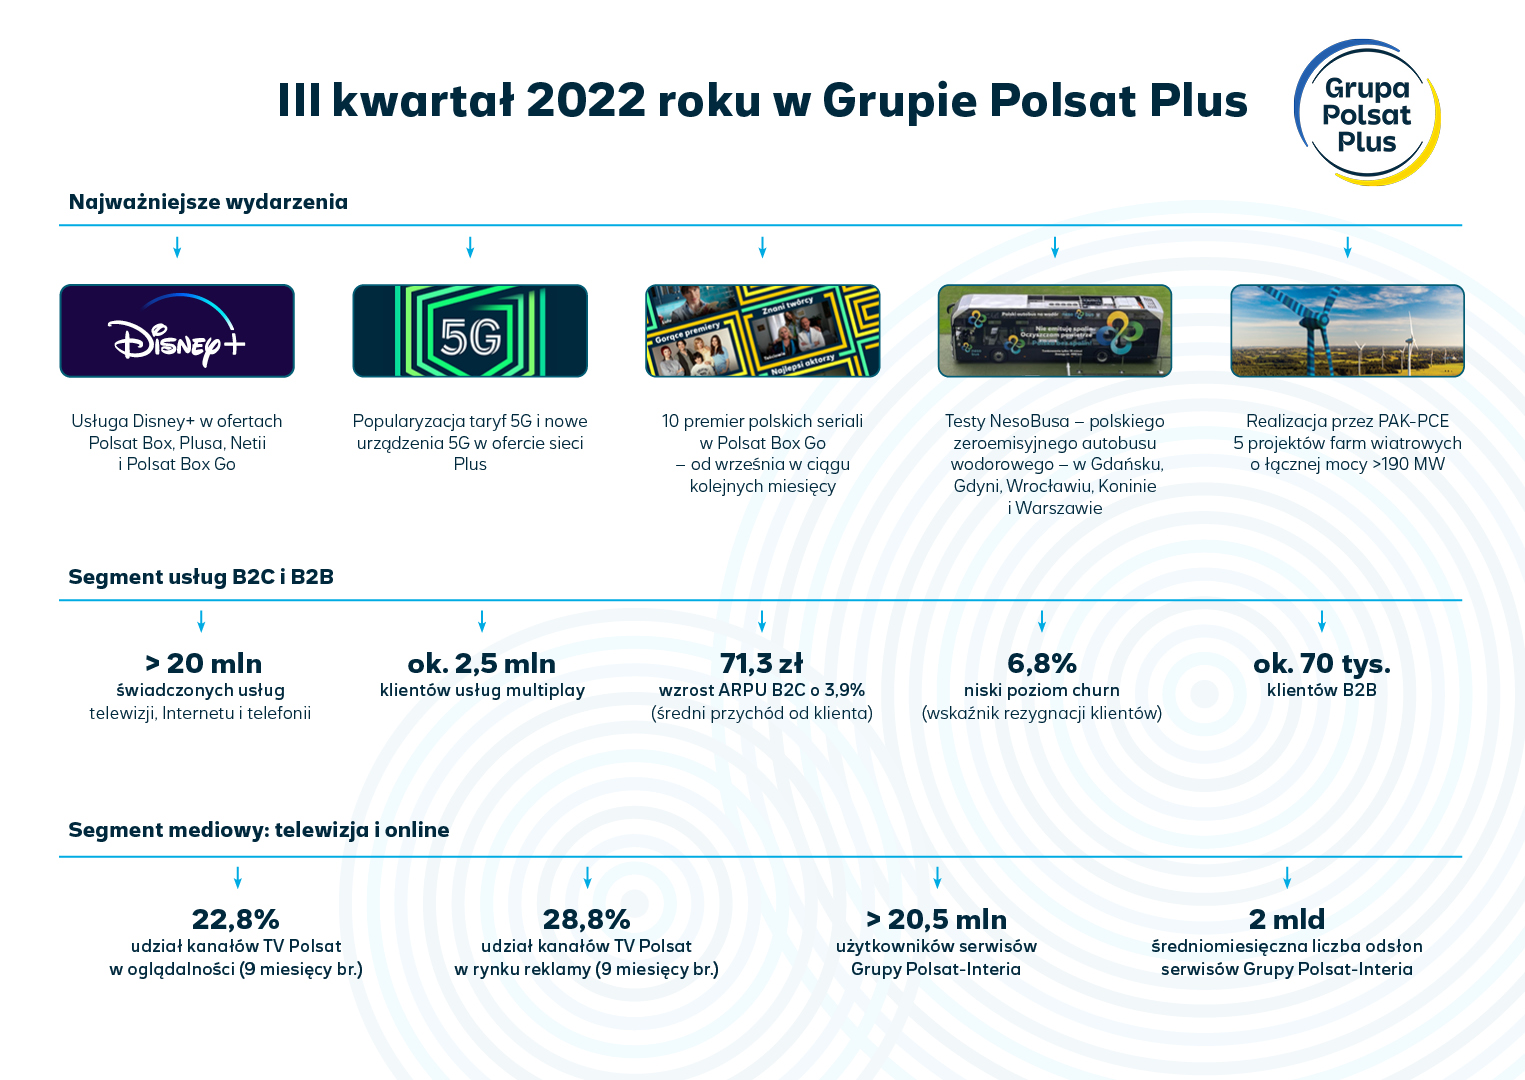 iii kwartal 2022 roku w grupie polsat plus